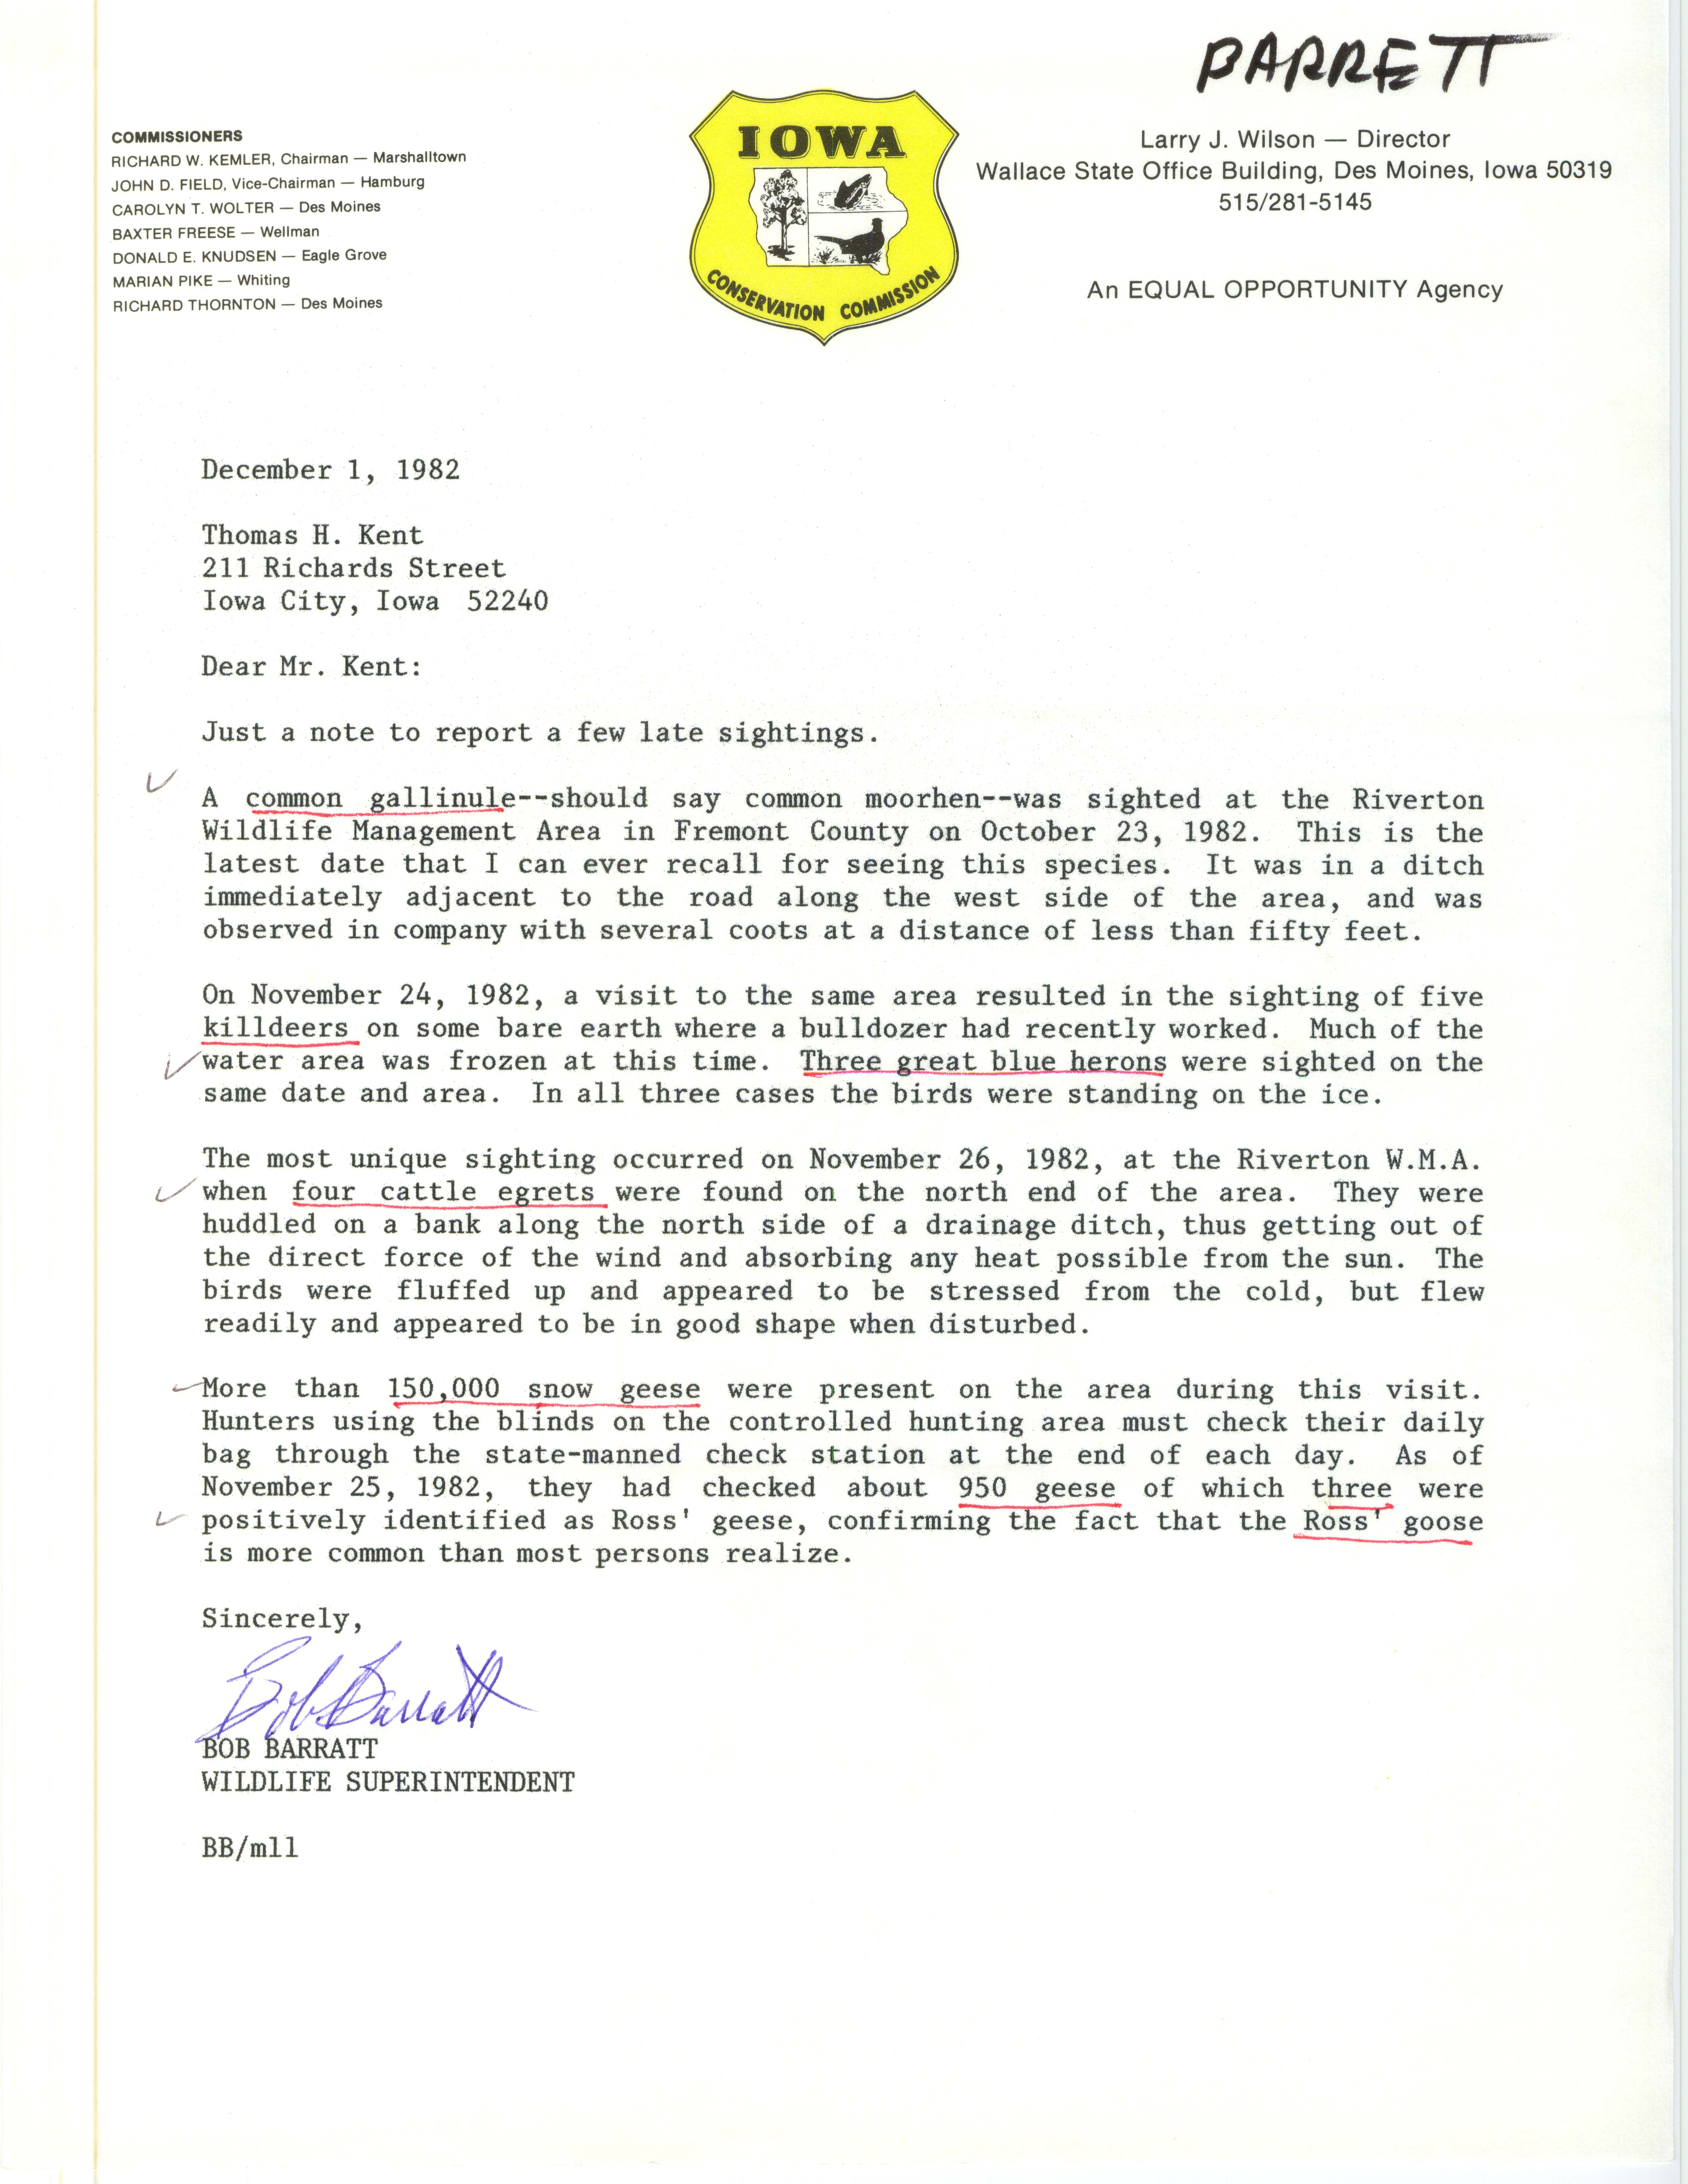 Bob Barratt letter to Thomas H. Kent regarding bird sightings, December 1, 1982